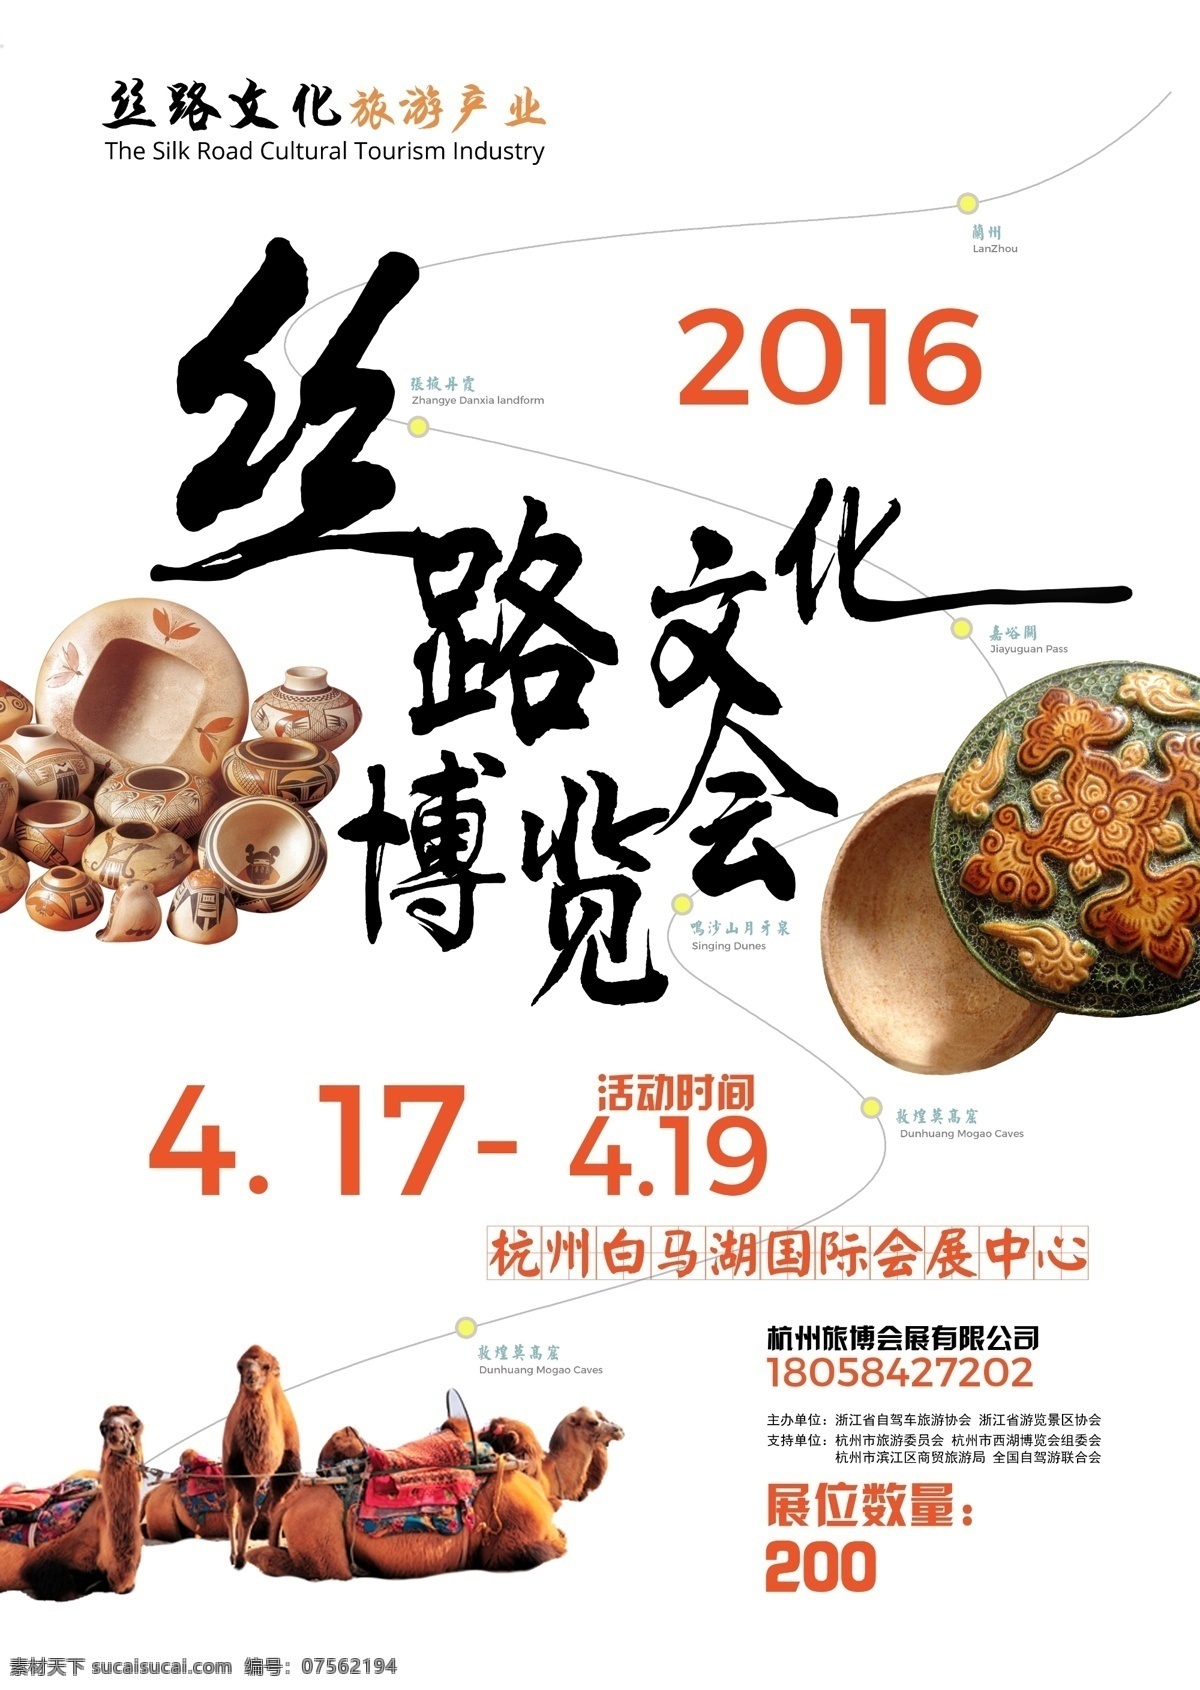 丝路 文化旅游 产业 博览会 丝绸之路 海报 文化 古风 白色